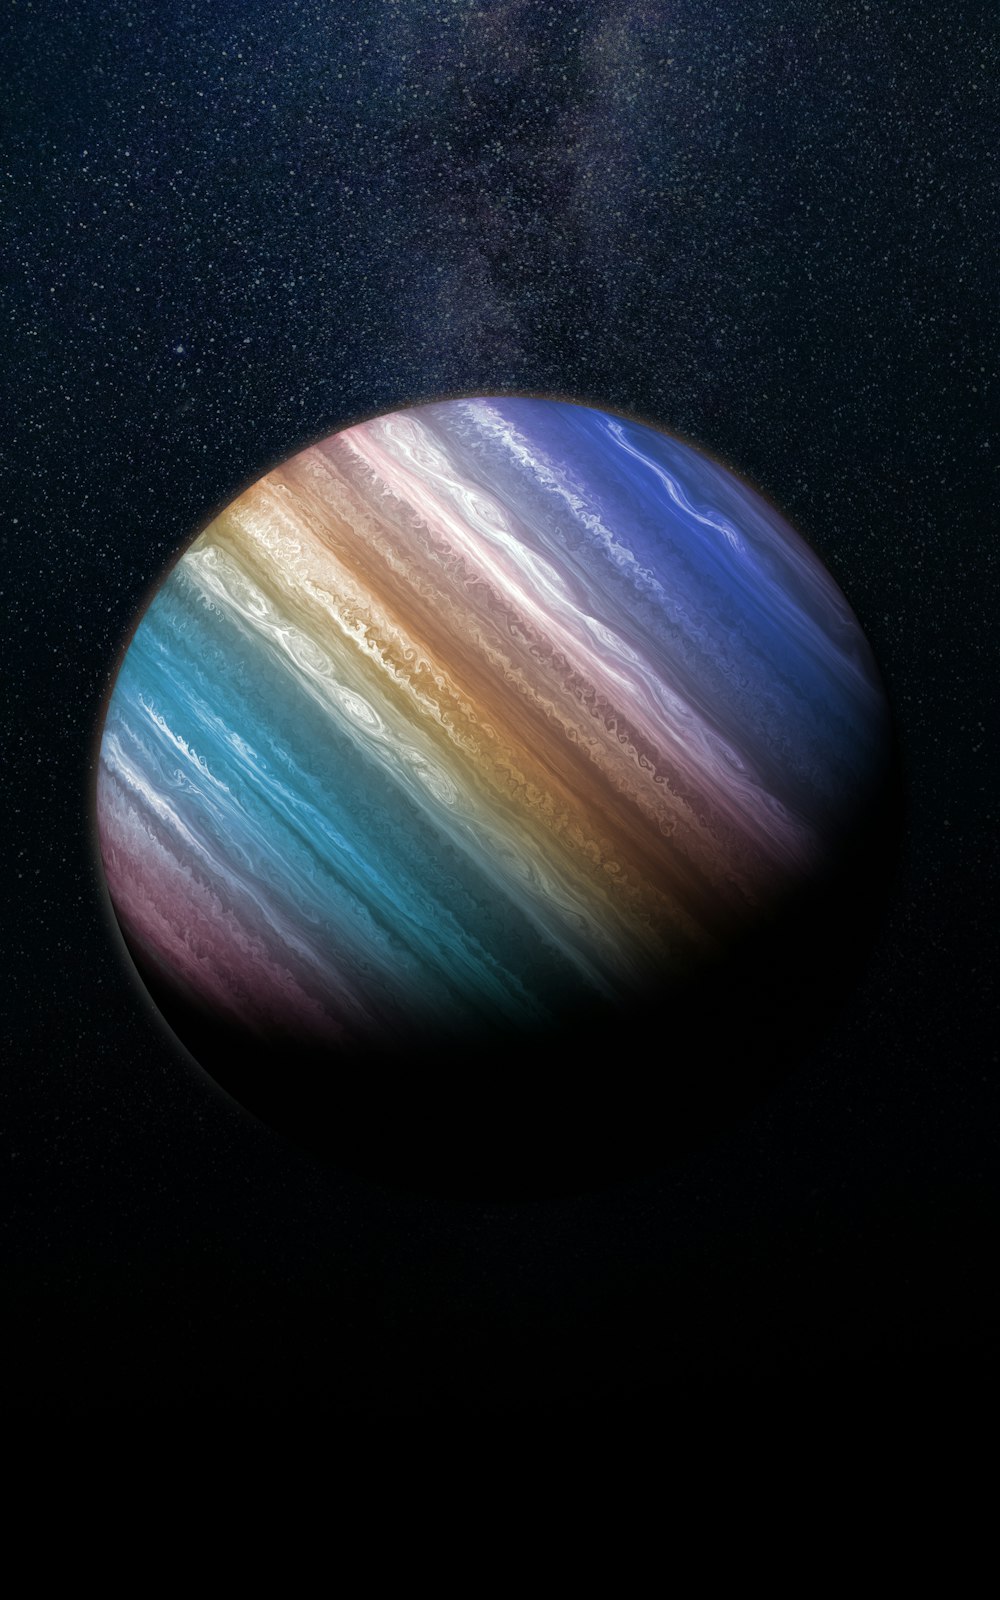 Un'immagine del pianeta Saturno ripresa dallo spazio